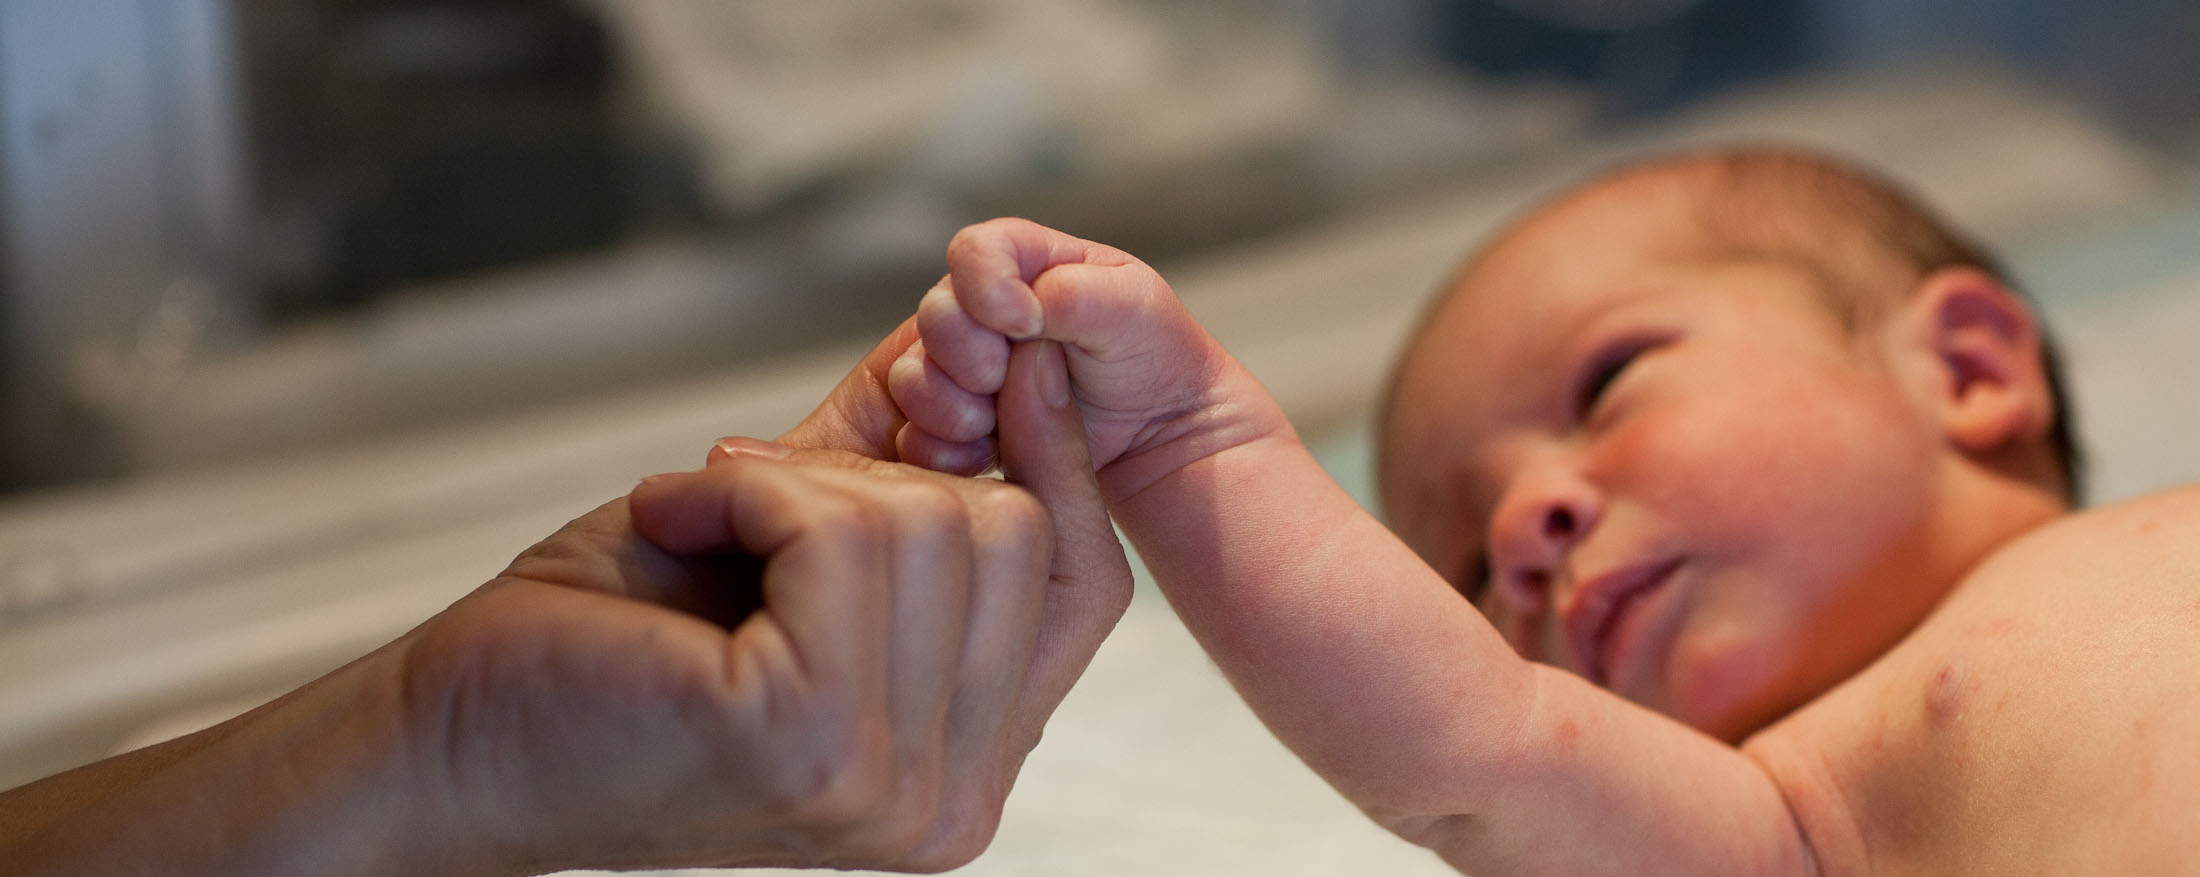 Um adulto segurando delicadamente a mão de um recém-nascido